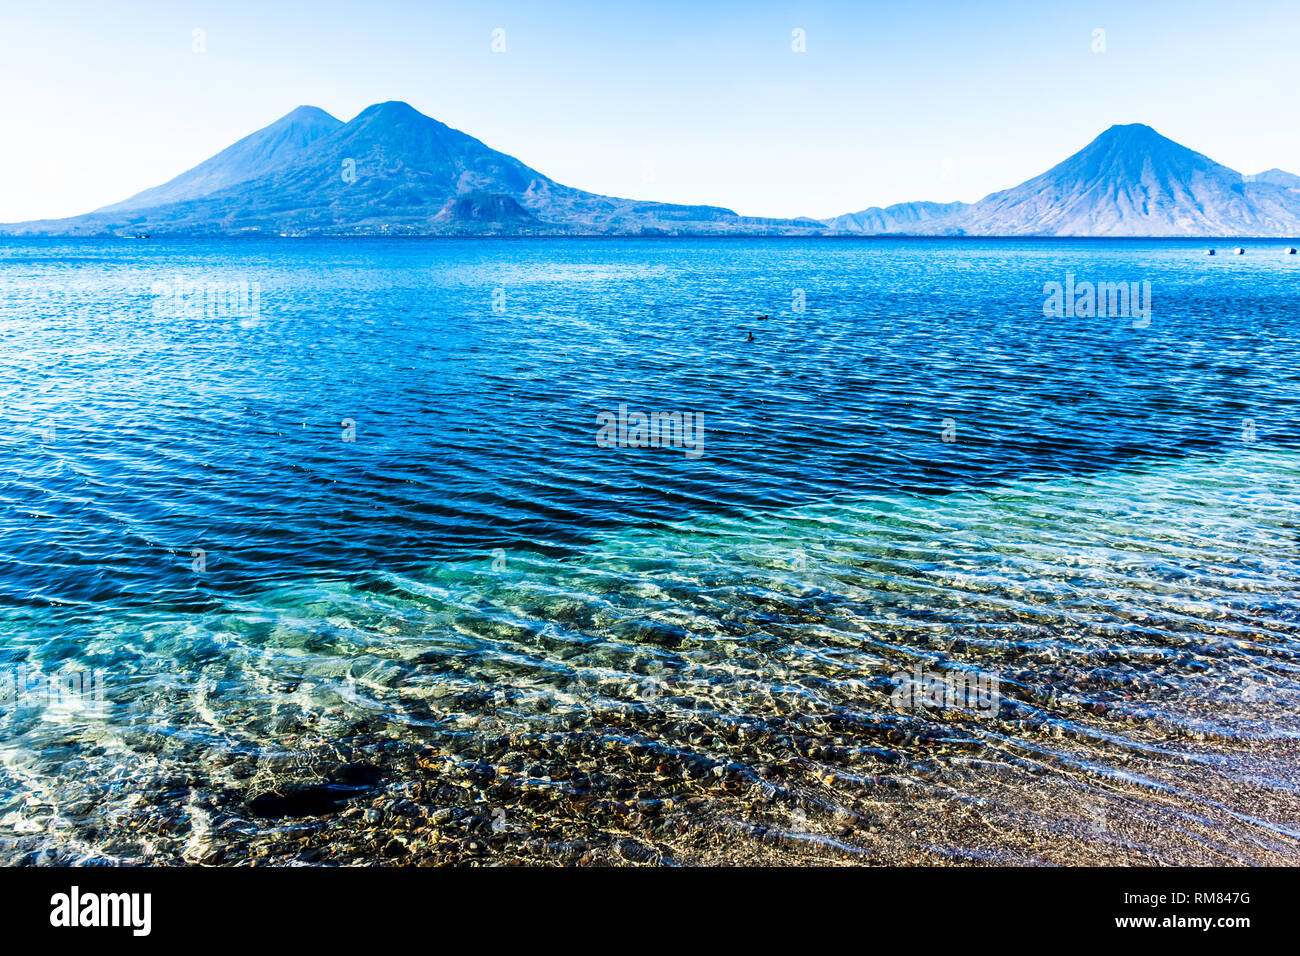 Atitlan, Toliman & San Pedro volcanoes on Lake Atitlan in Guatemalan highlands Stock Photo